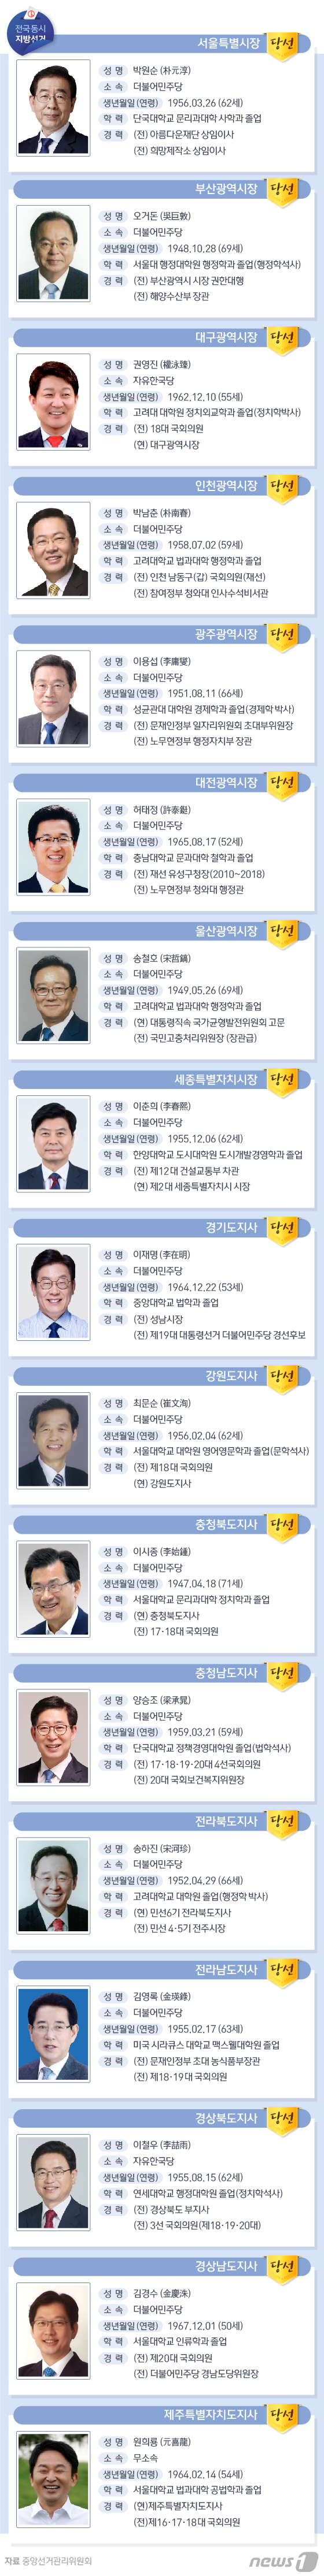 [그래픽뉴스] 광역단체장 당선자 프로필